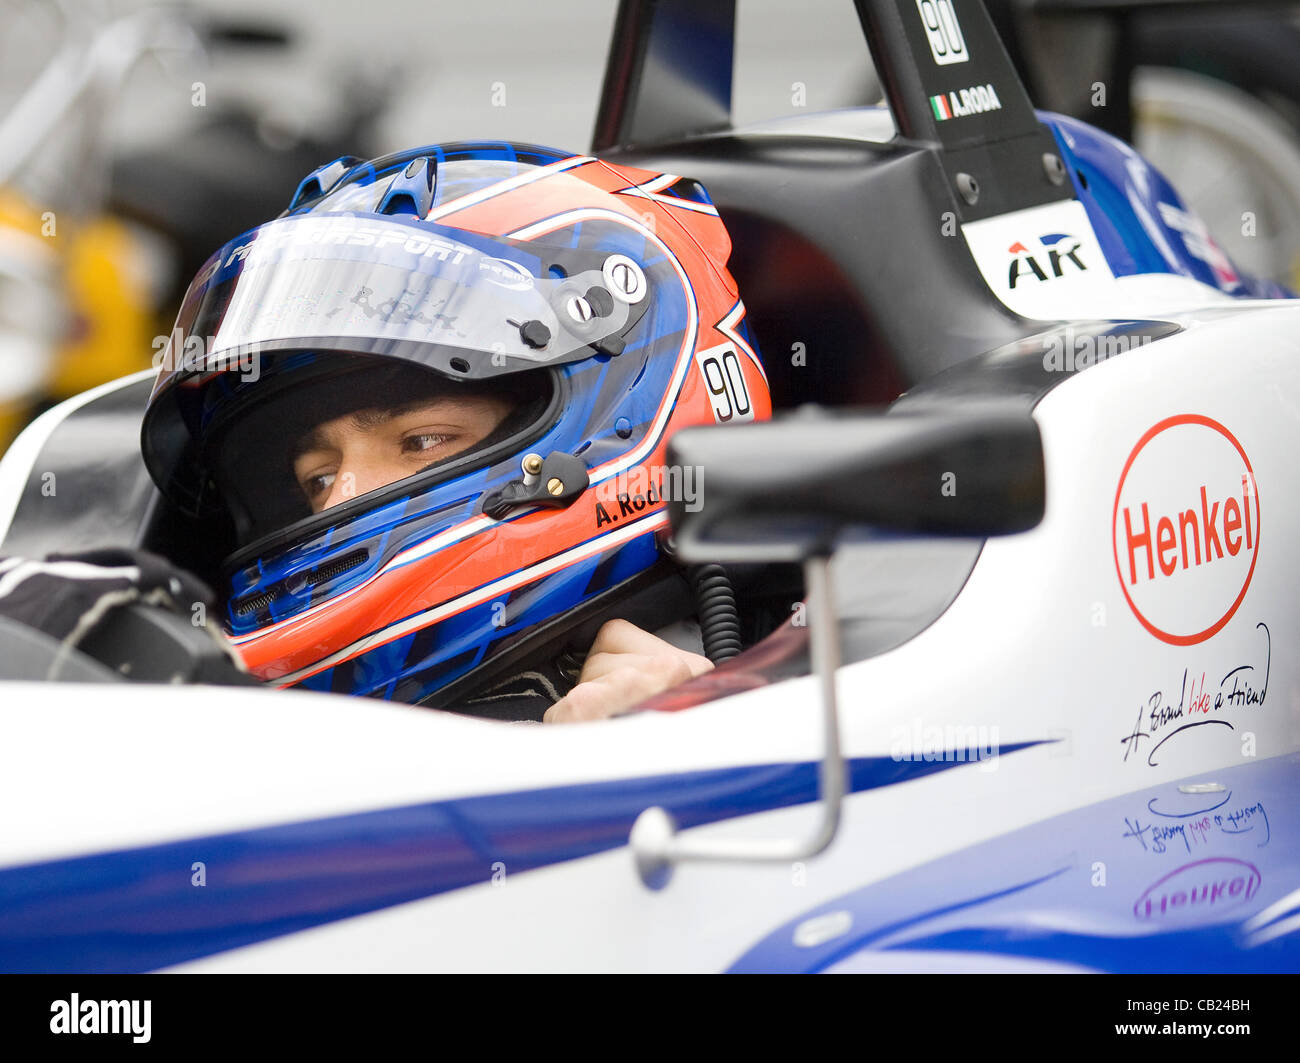 18.05.2012 Brands Hatch, Inghilterra. Formula 3 Euro Series, Andrea Roda (I) attende nella sua F3 durante il venerdi di FP1. Foto Stock